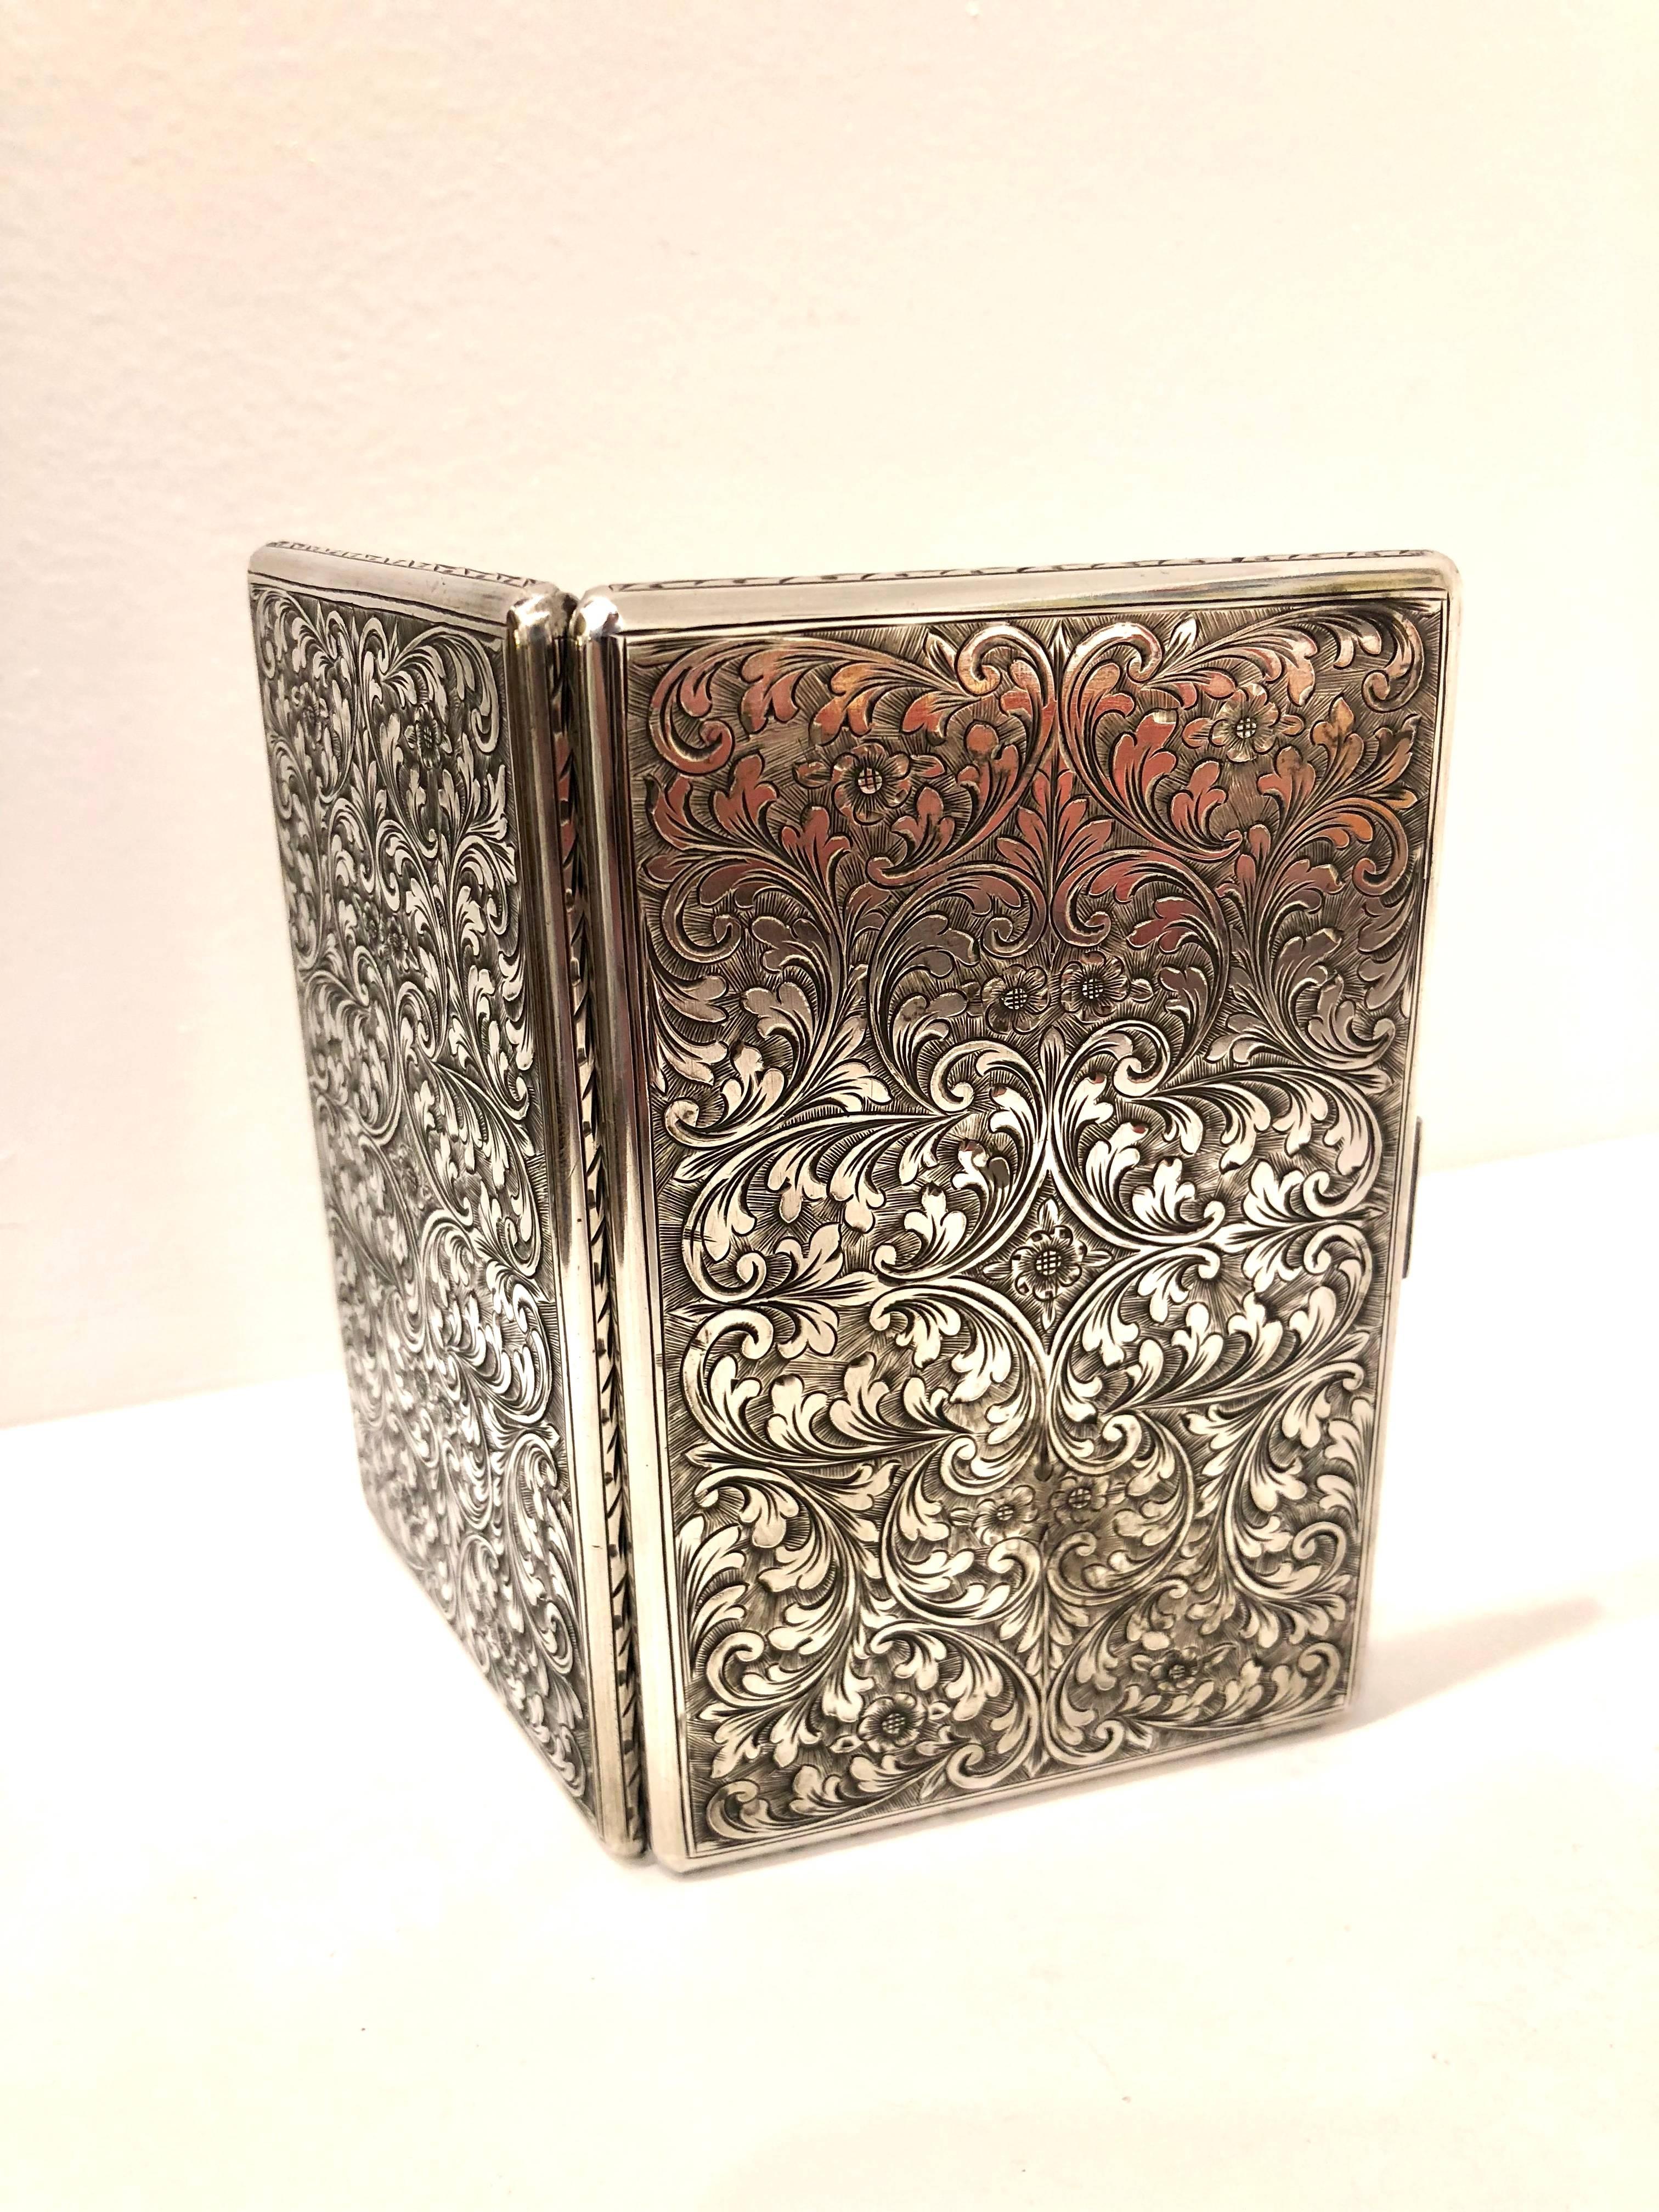 Antique silver stamped cigarette case holder.